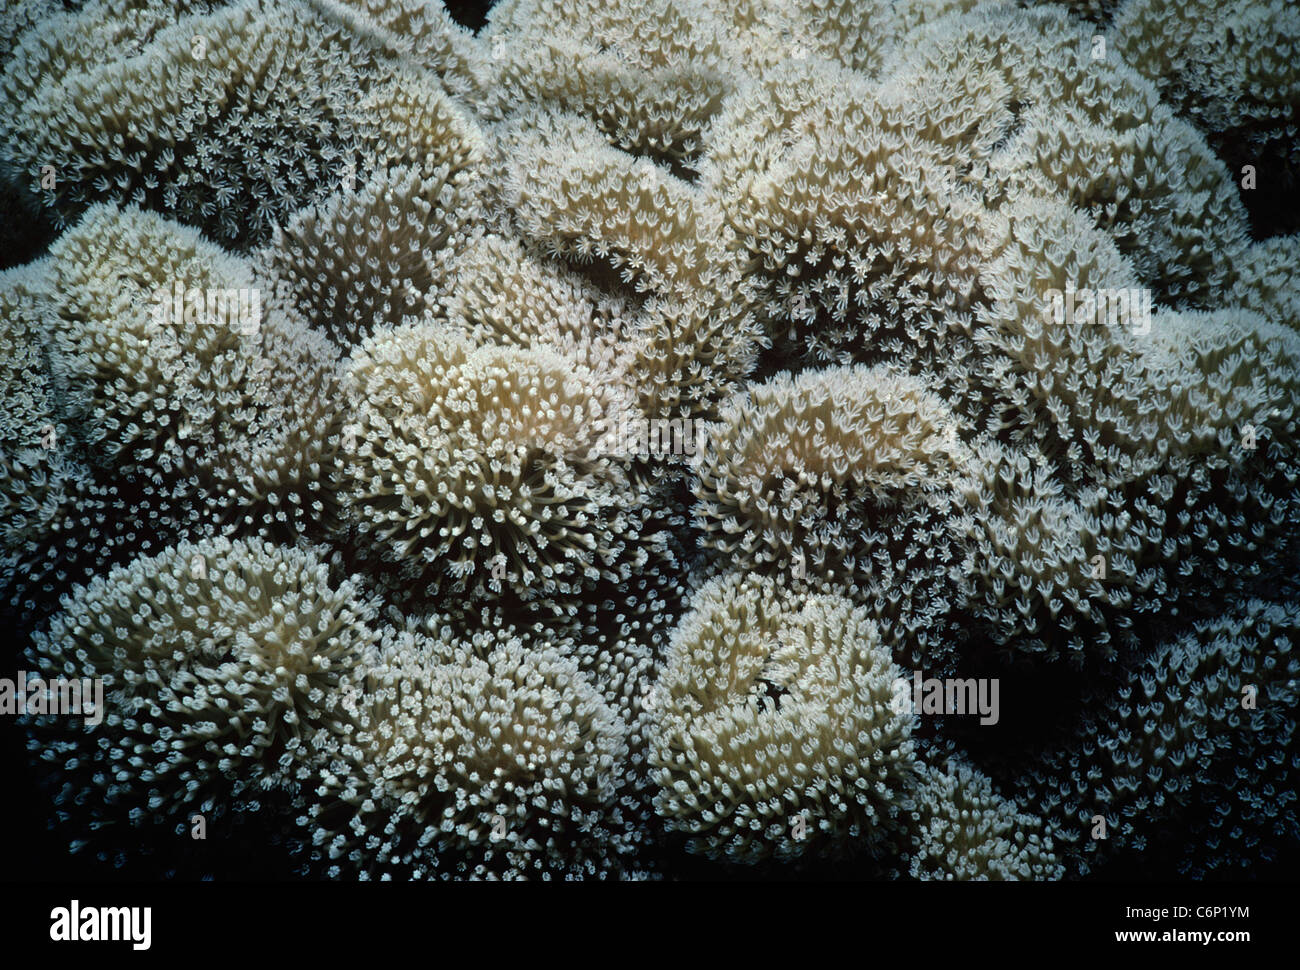 Les oreilles d'éléphant (Sarcophyton trocheliophorum), également connu sous le nom de polypes de corail Sarcophyton, ouvrir et d'alimentation. L'Egypte, Mer Rouge Banque D'Images